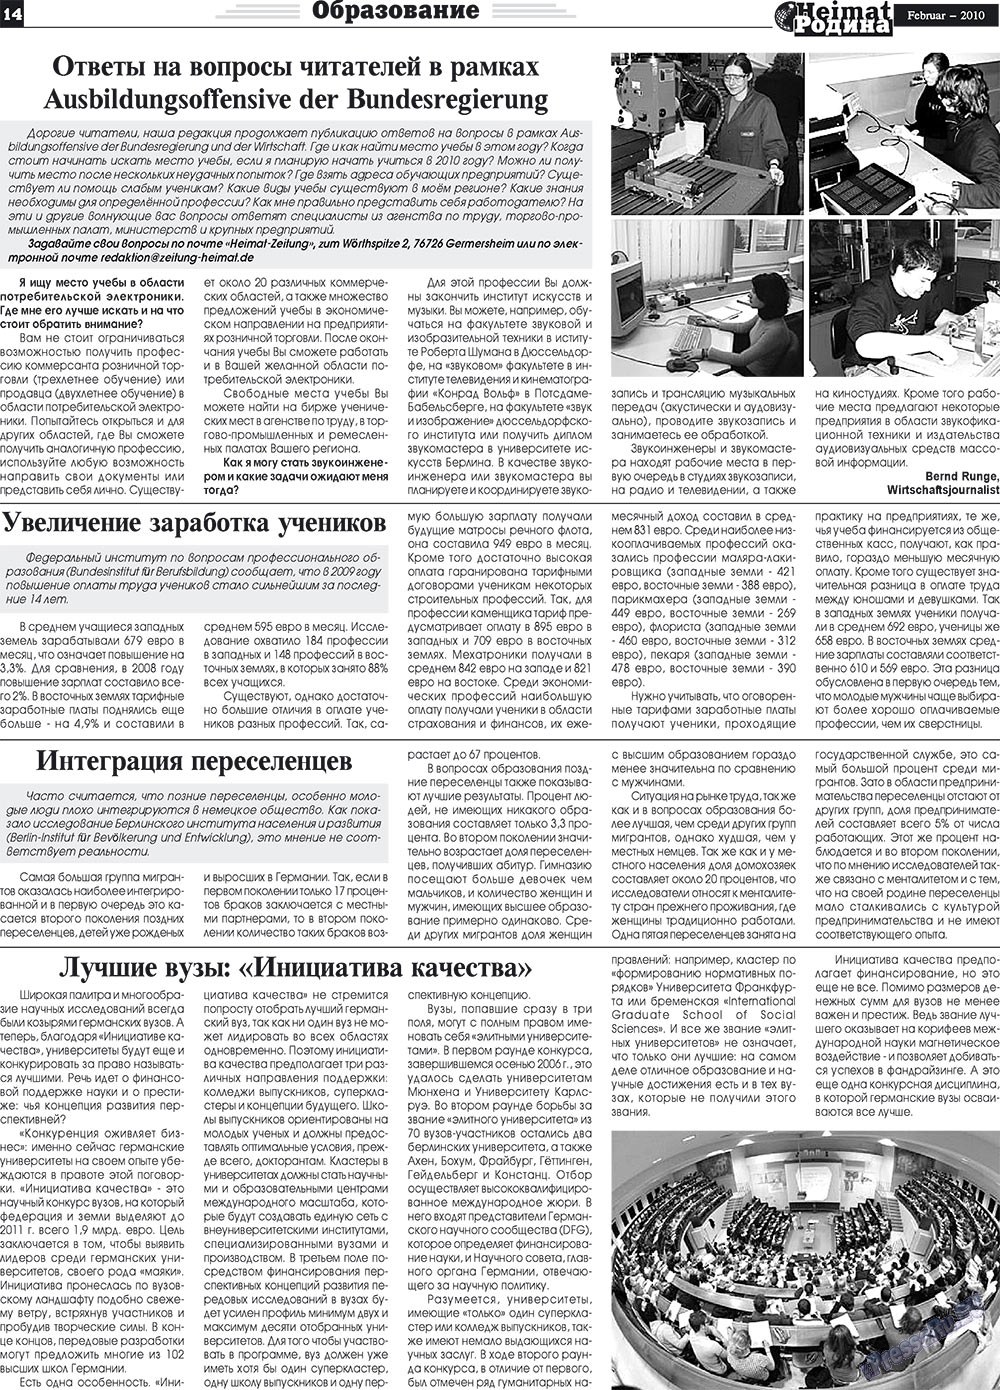 Heimat-Родина (газета). 2010 год, номер 2, стр. 14